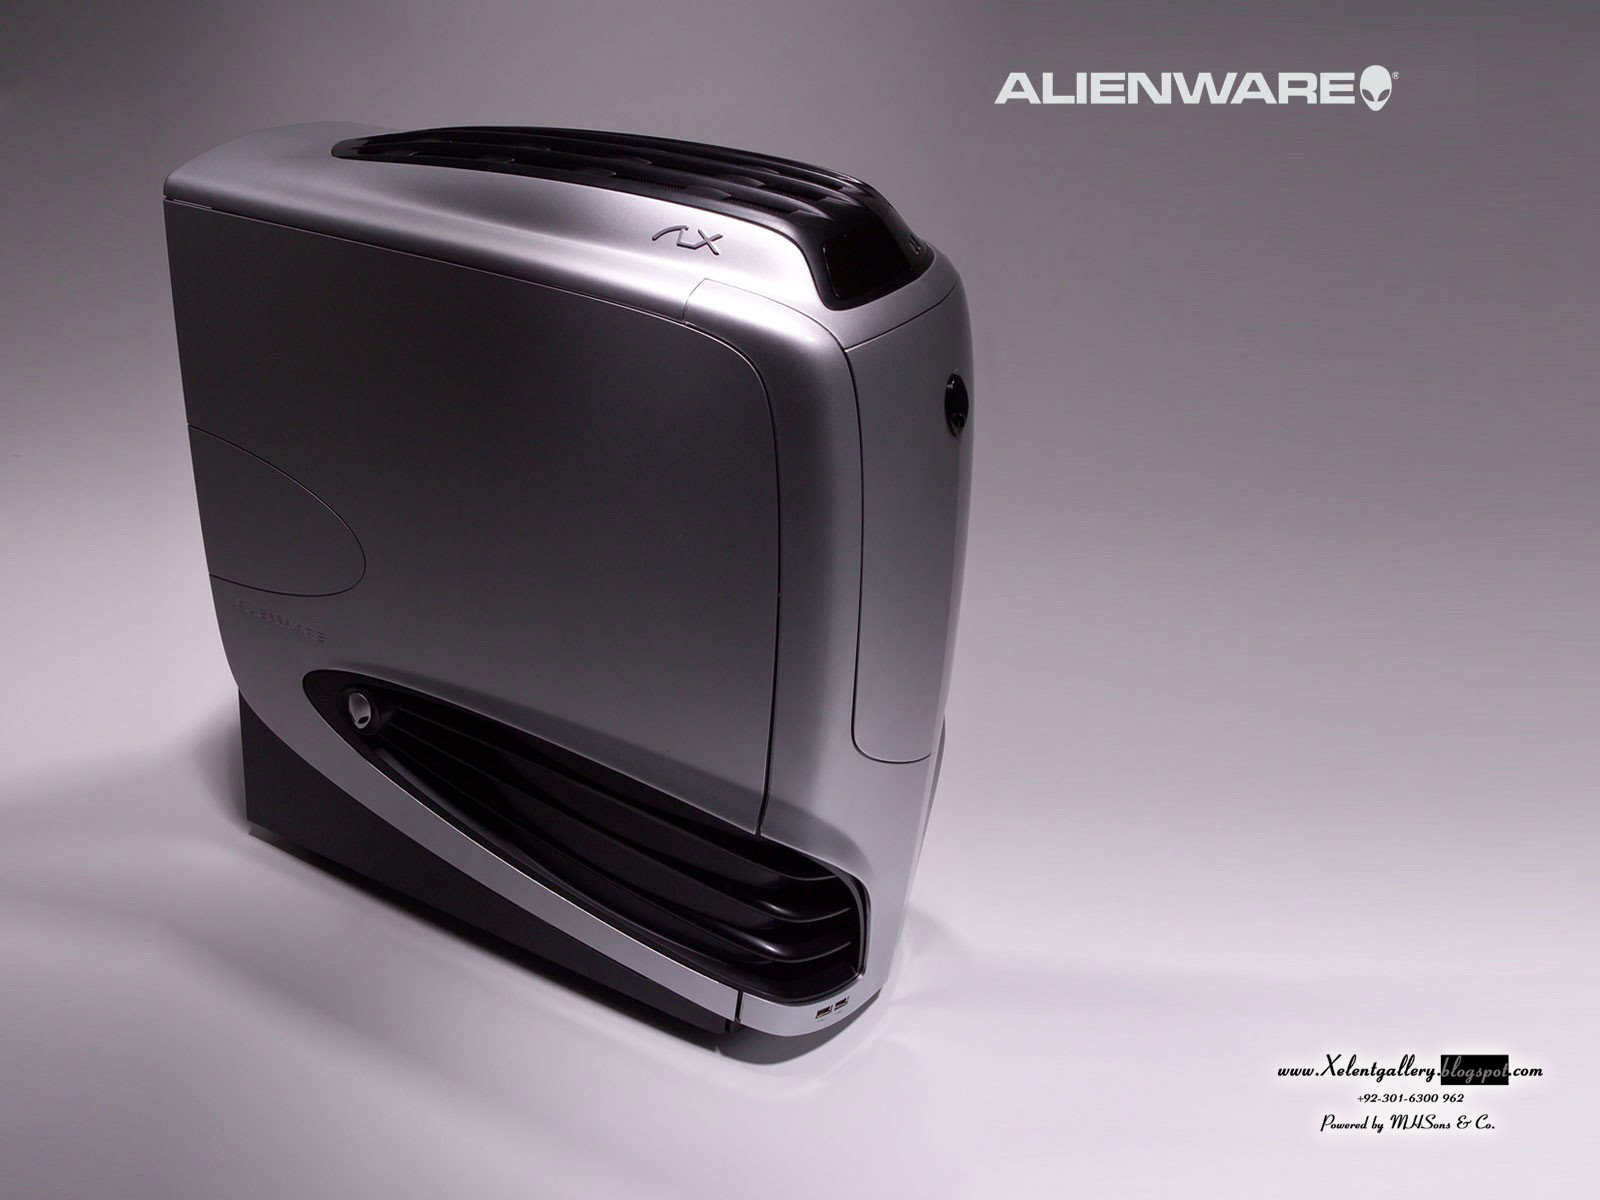 HD Alienware Wallpaper Pack Xelent Gallery